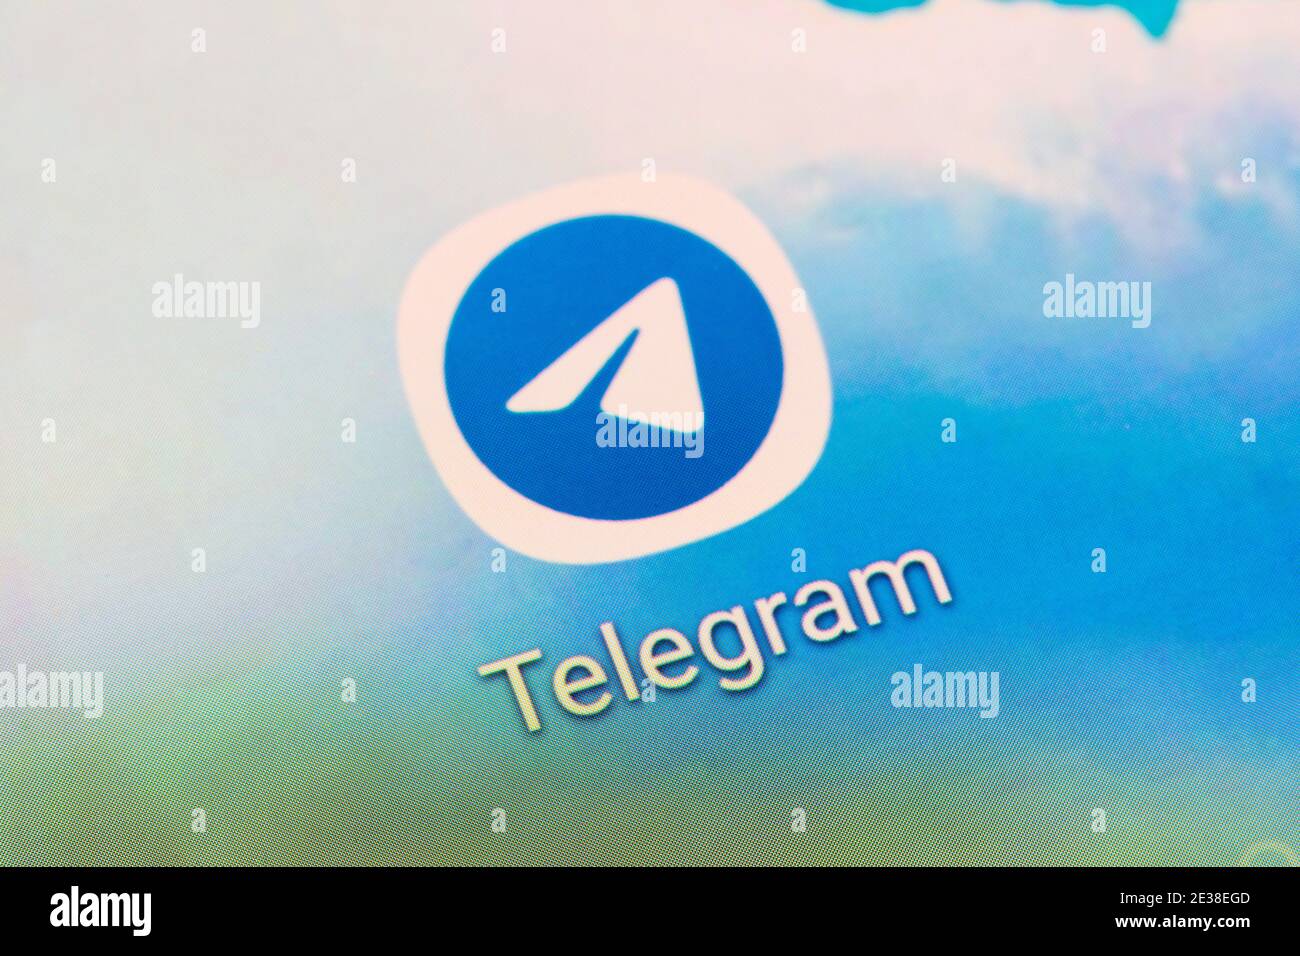 Eine Nahaufnahme der Telegram App - einer Freeware, plattformübergreifenden, Cloud-basierten Instant Messaging-Software und einem Anwendungsdienst - auf einem Smartphone-Bildschirm Stockfoto